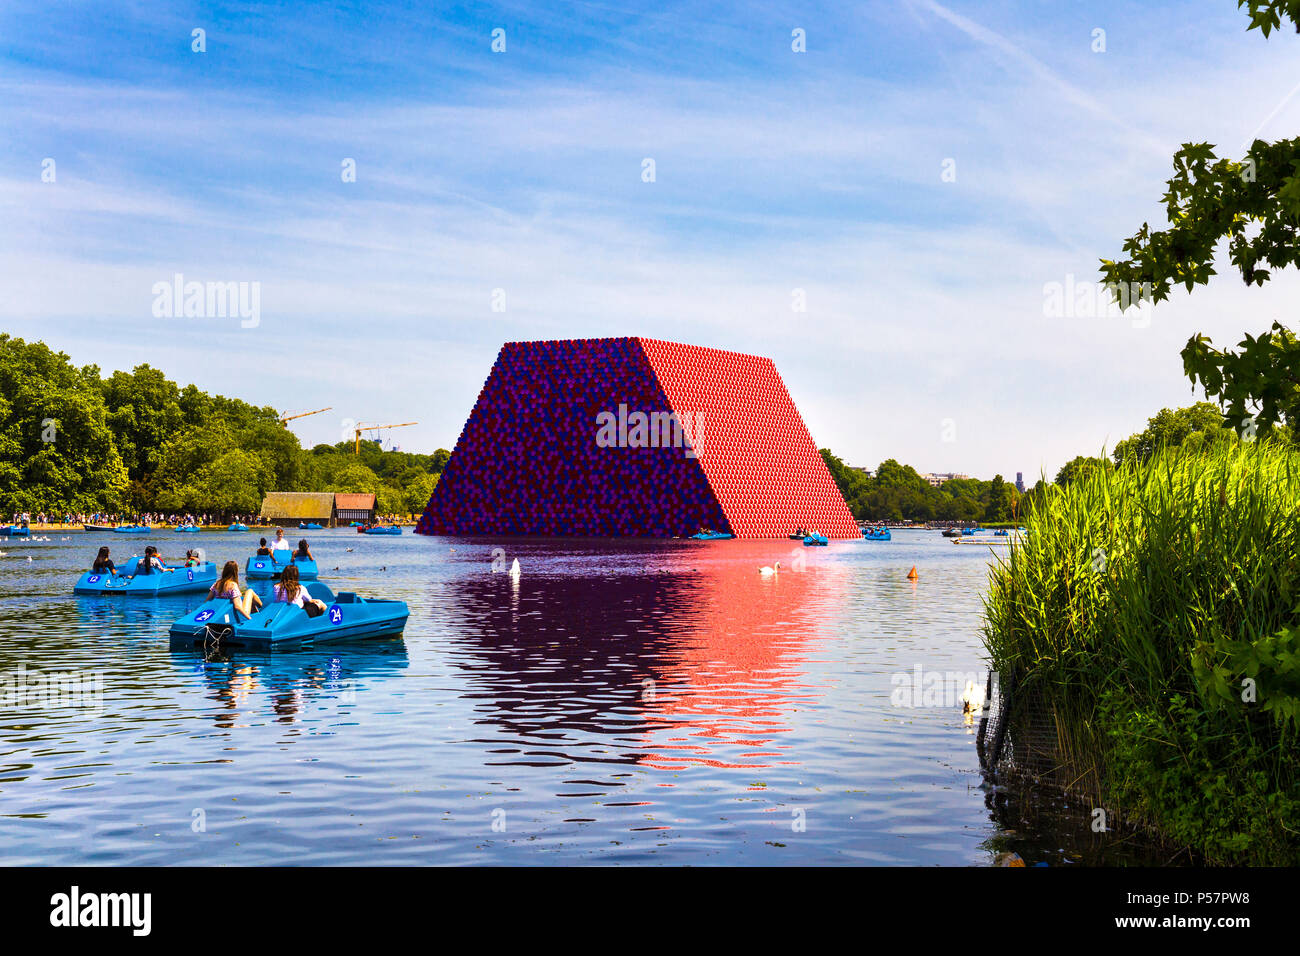 Juin 2018 - Le mastaba sculpture par Christo et Jeanne-Claude flottant dans le lac Serpentine, à Hyde Park, Londres, UK Banque D'Images